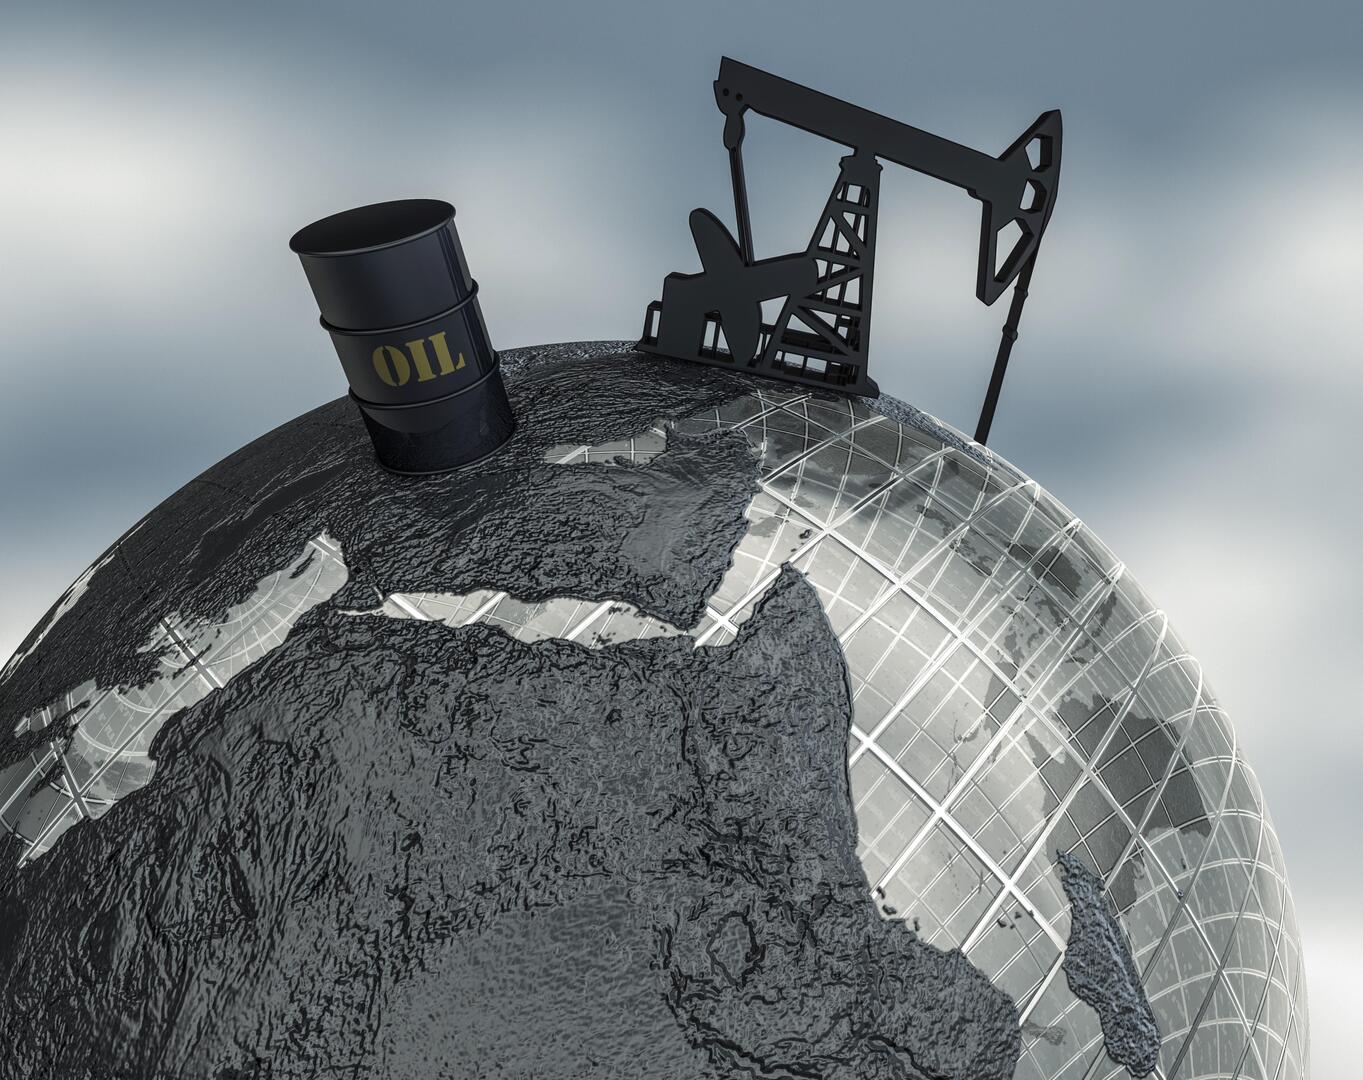 ارتفاع أسعار النفط مع استمرار التوتر في الشرق الأوسط